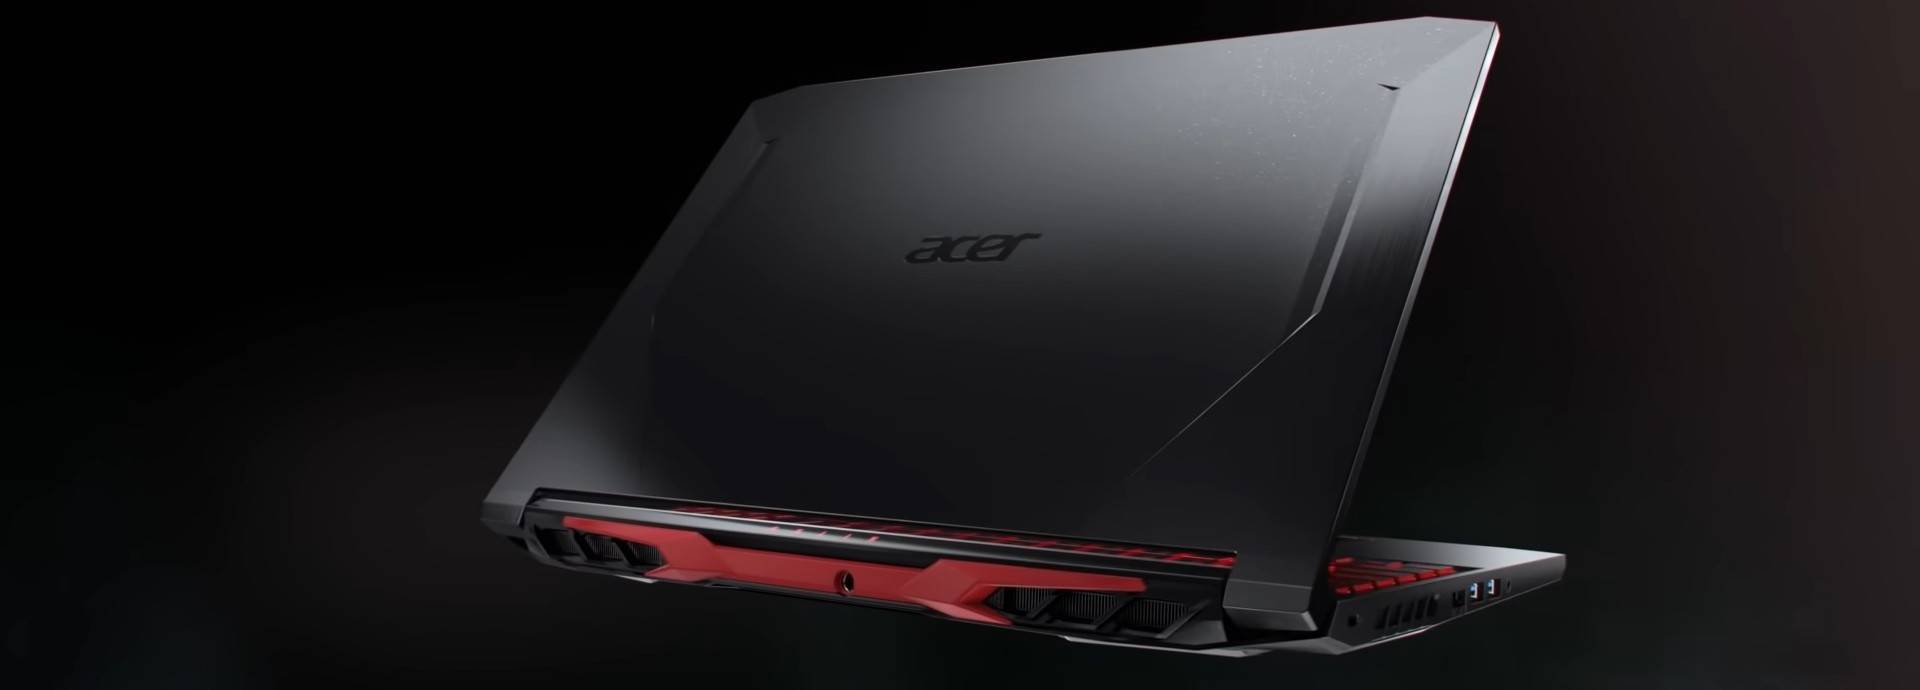 Acer Nitro 5 Gaming Laptop Long